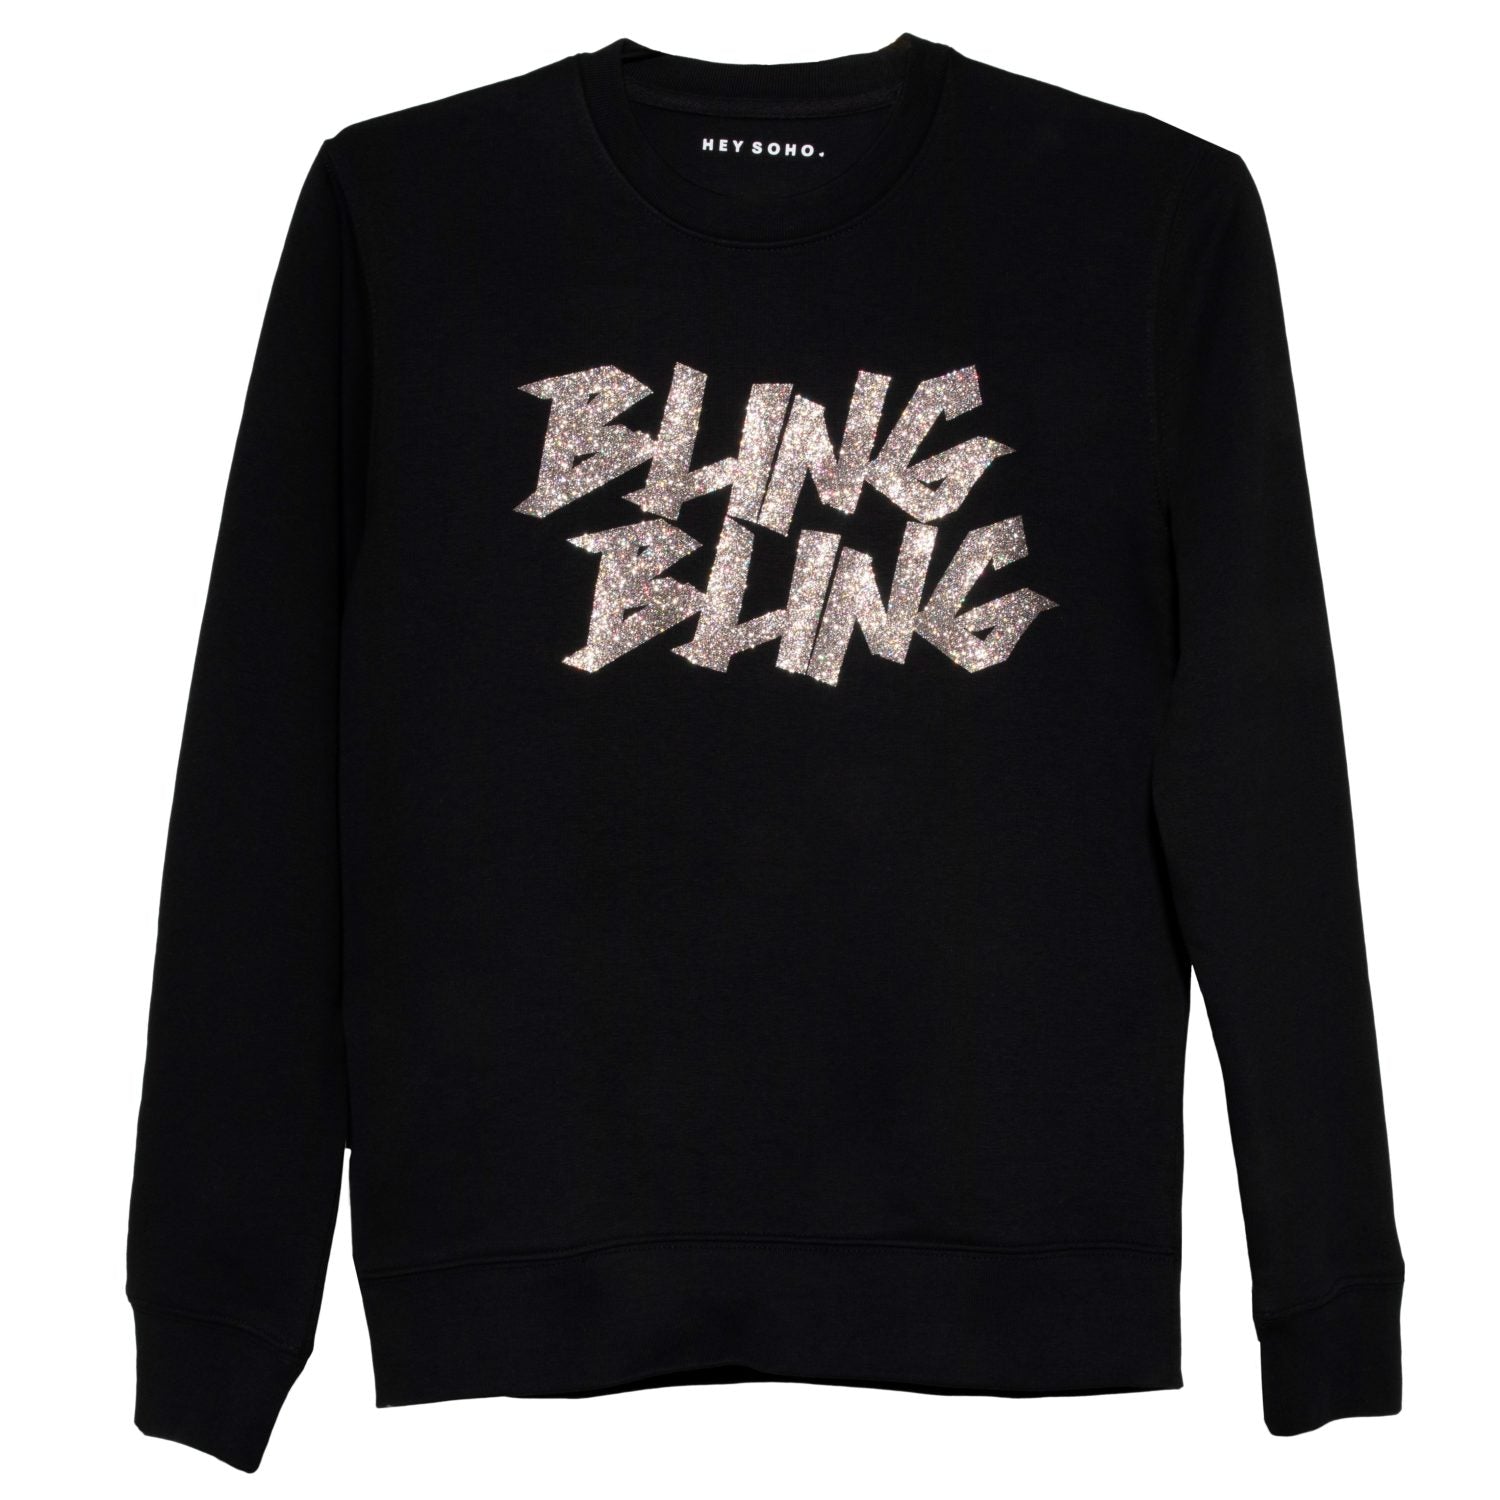 Hey Soho Sweater Bling Bling